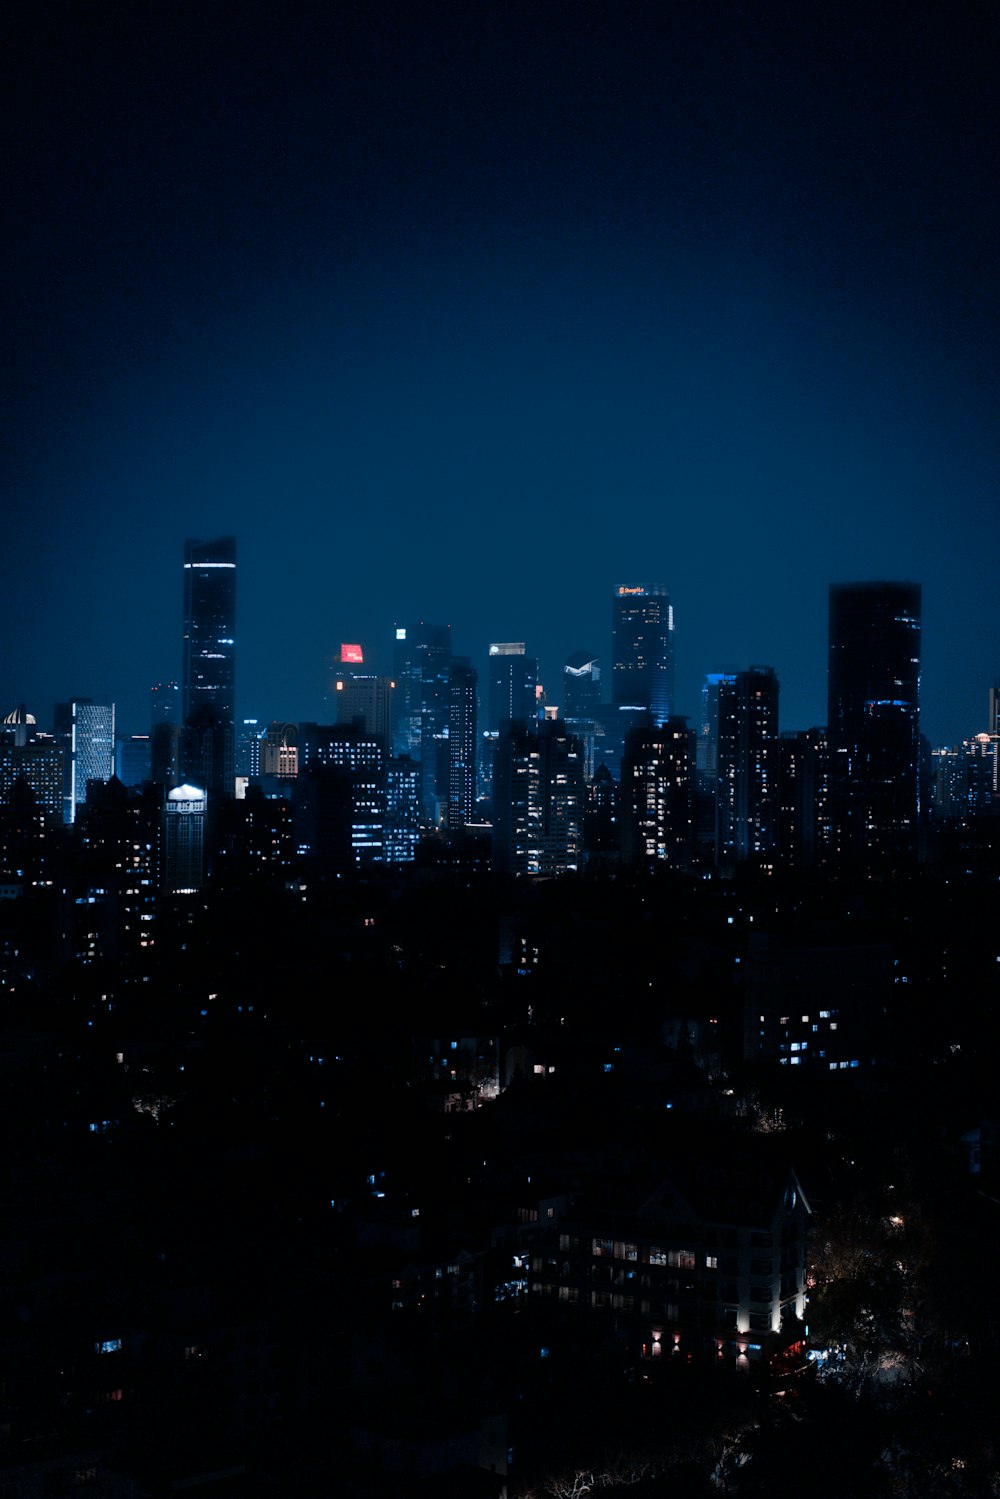 야간의 도시 스카이라인